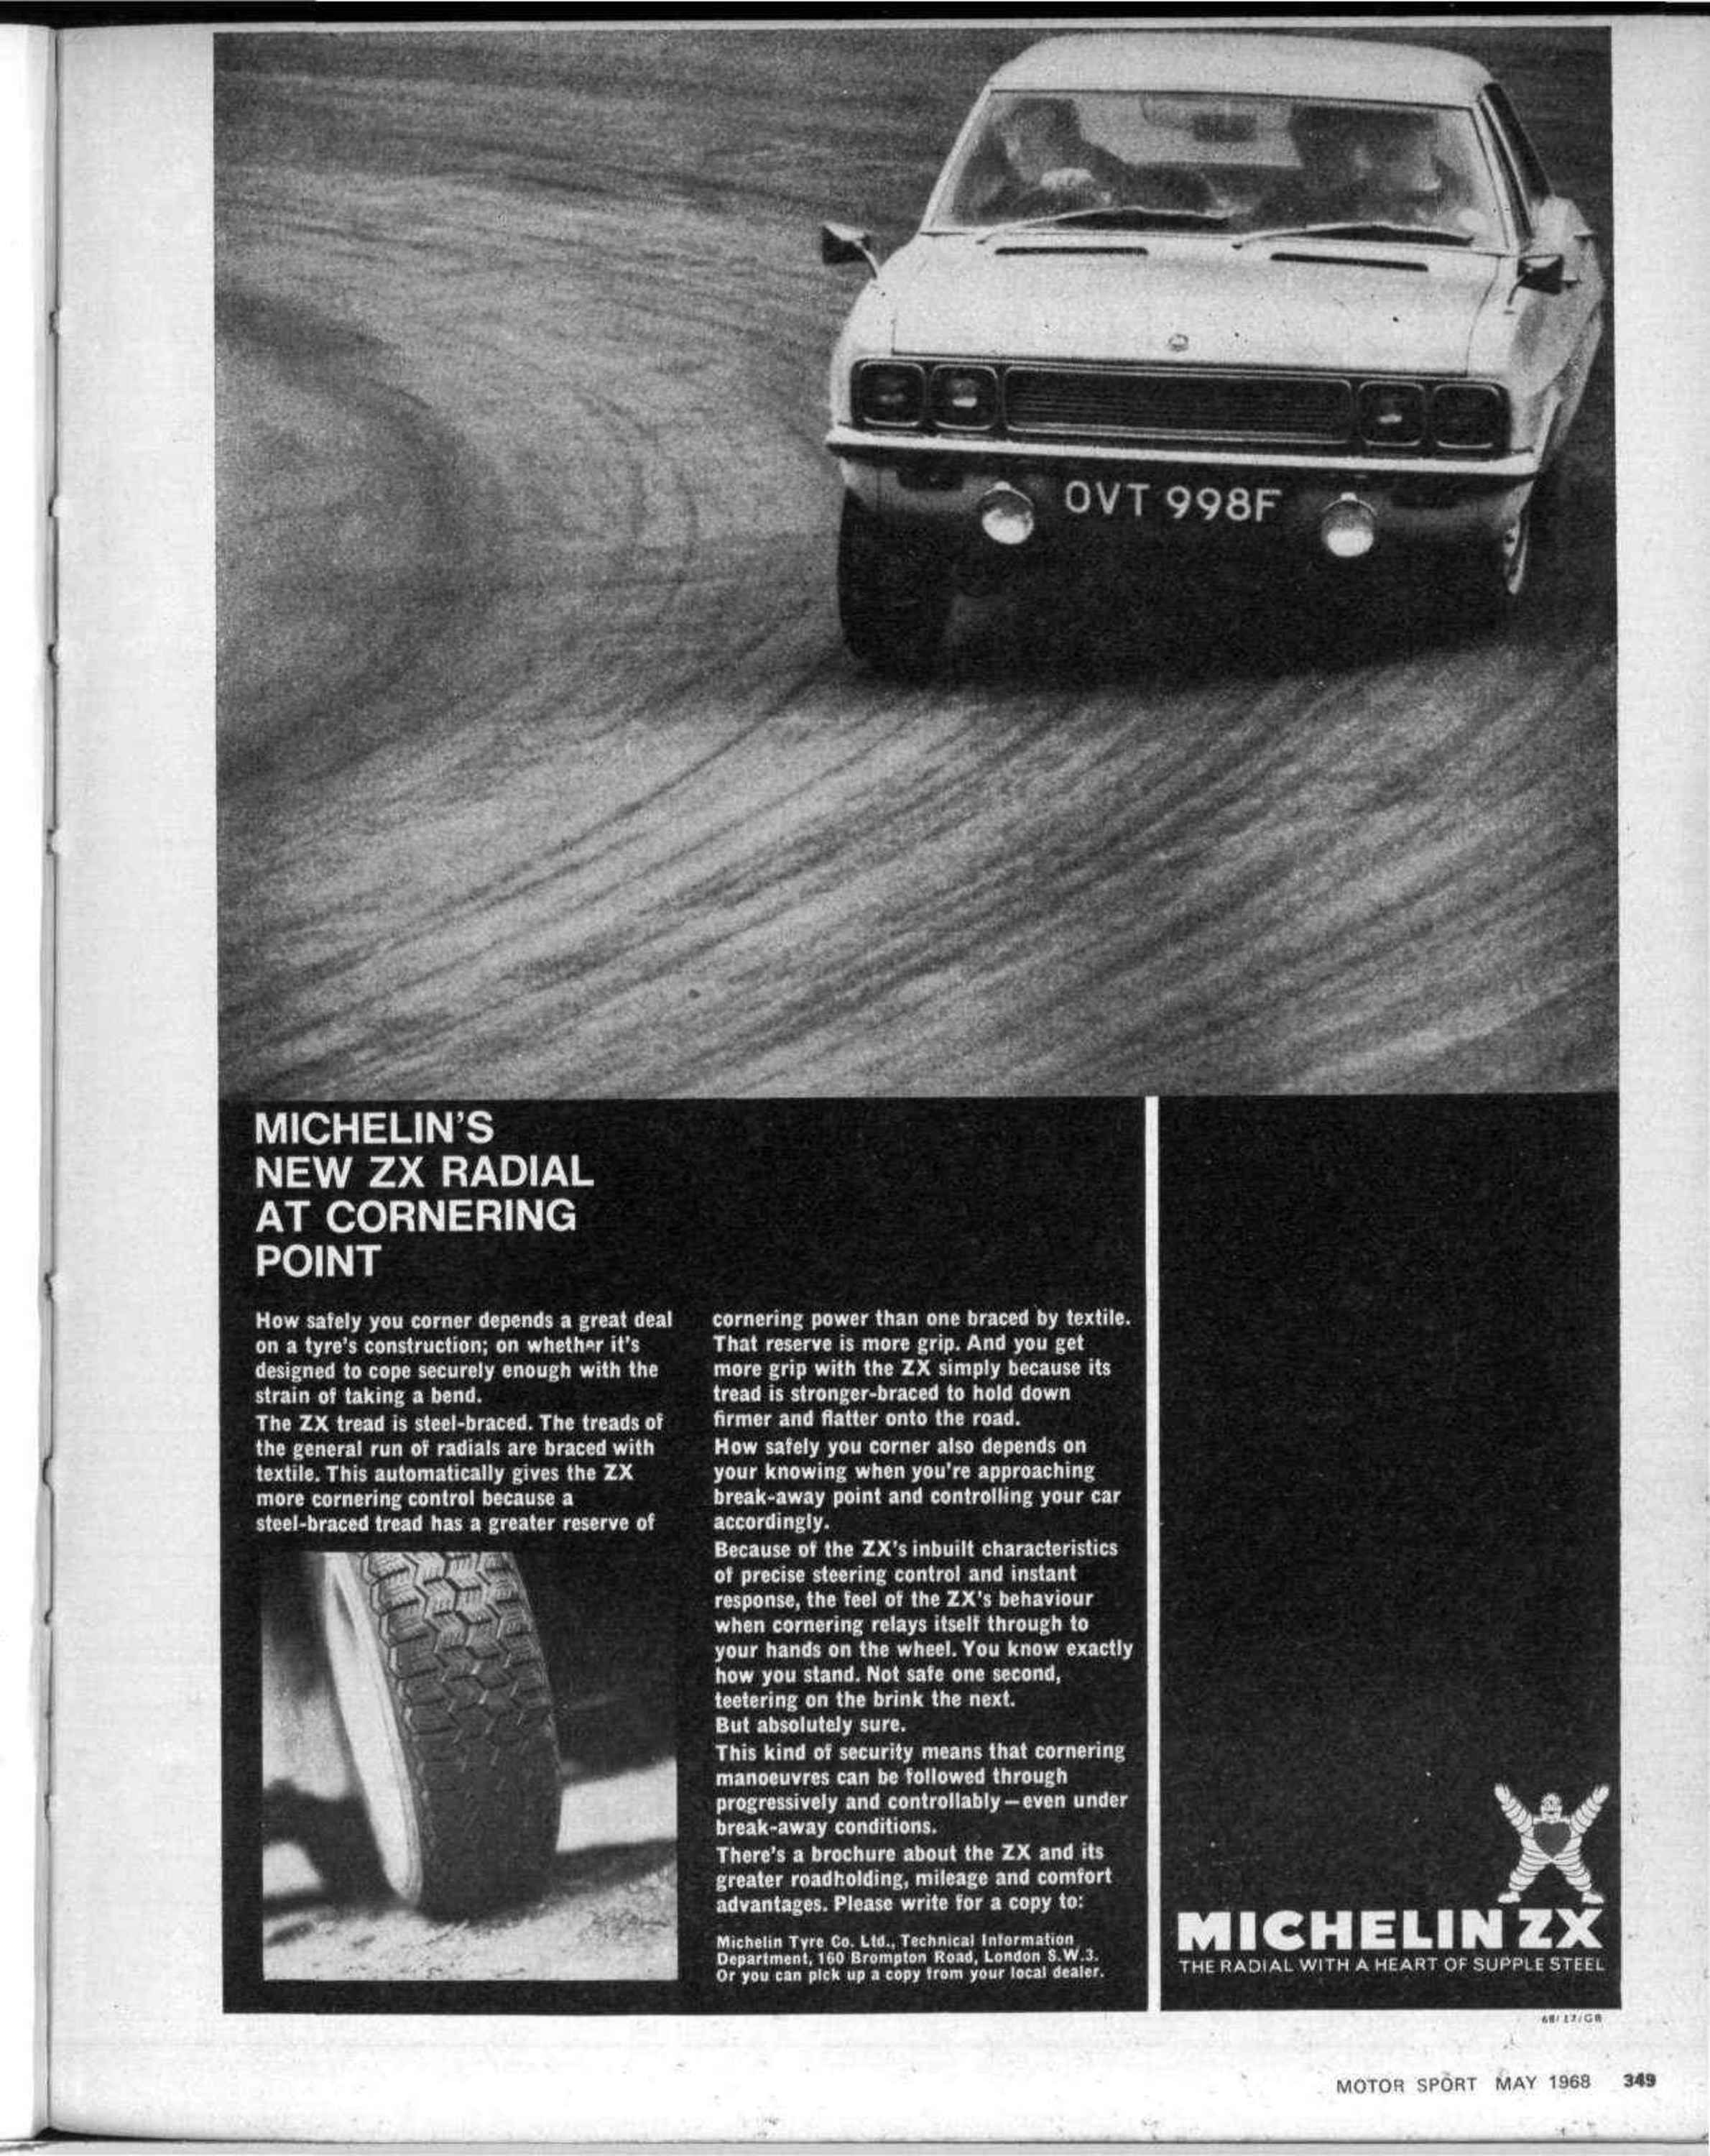 Continental Notes, May 1968 May 1968 - Motor Sport Magazine